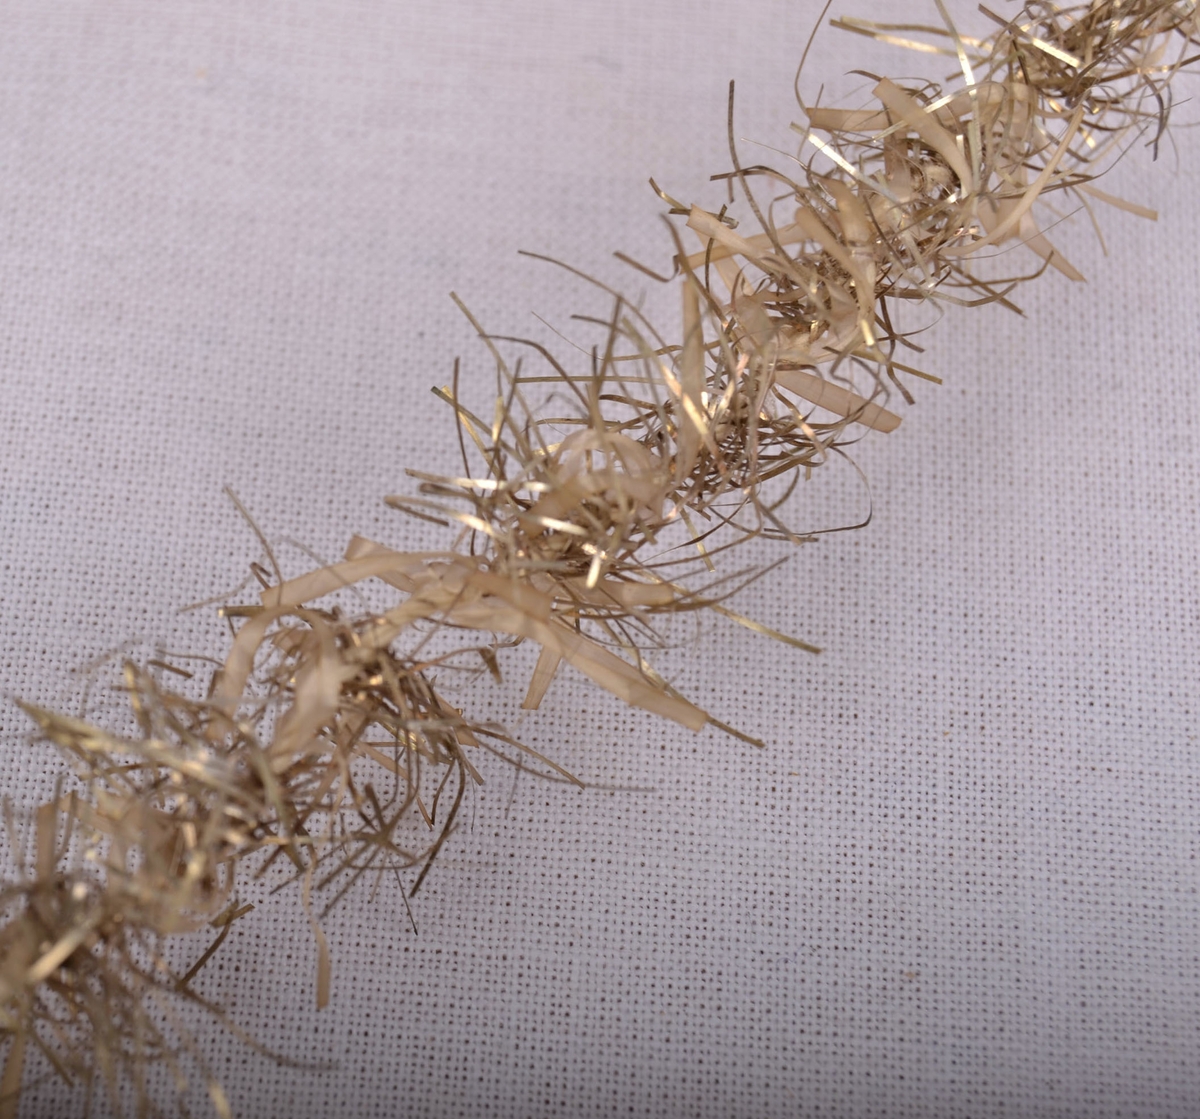 Lange lenker av tvunnet bomullshyssing med glittertråder stukket inn i hyssingen på tvers.